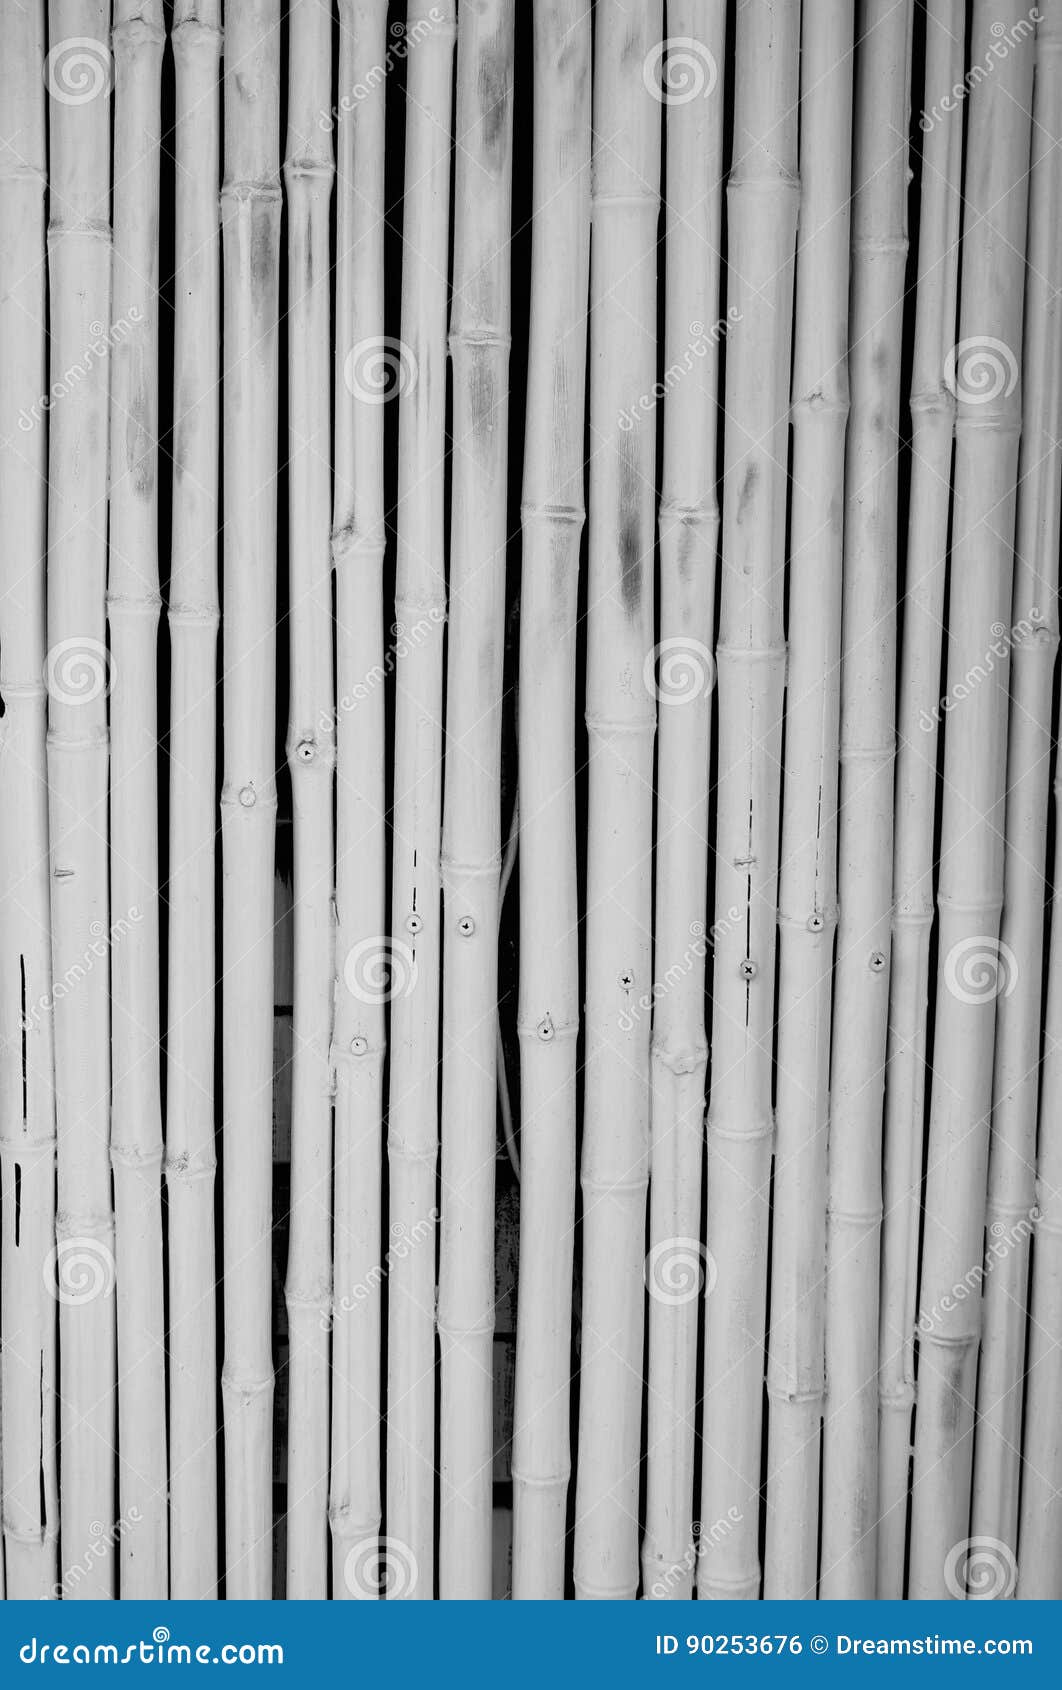 white bamboo